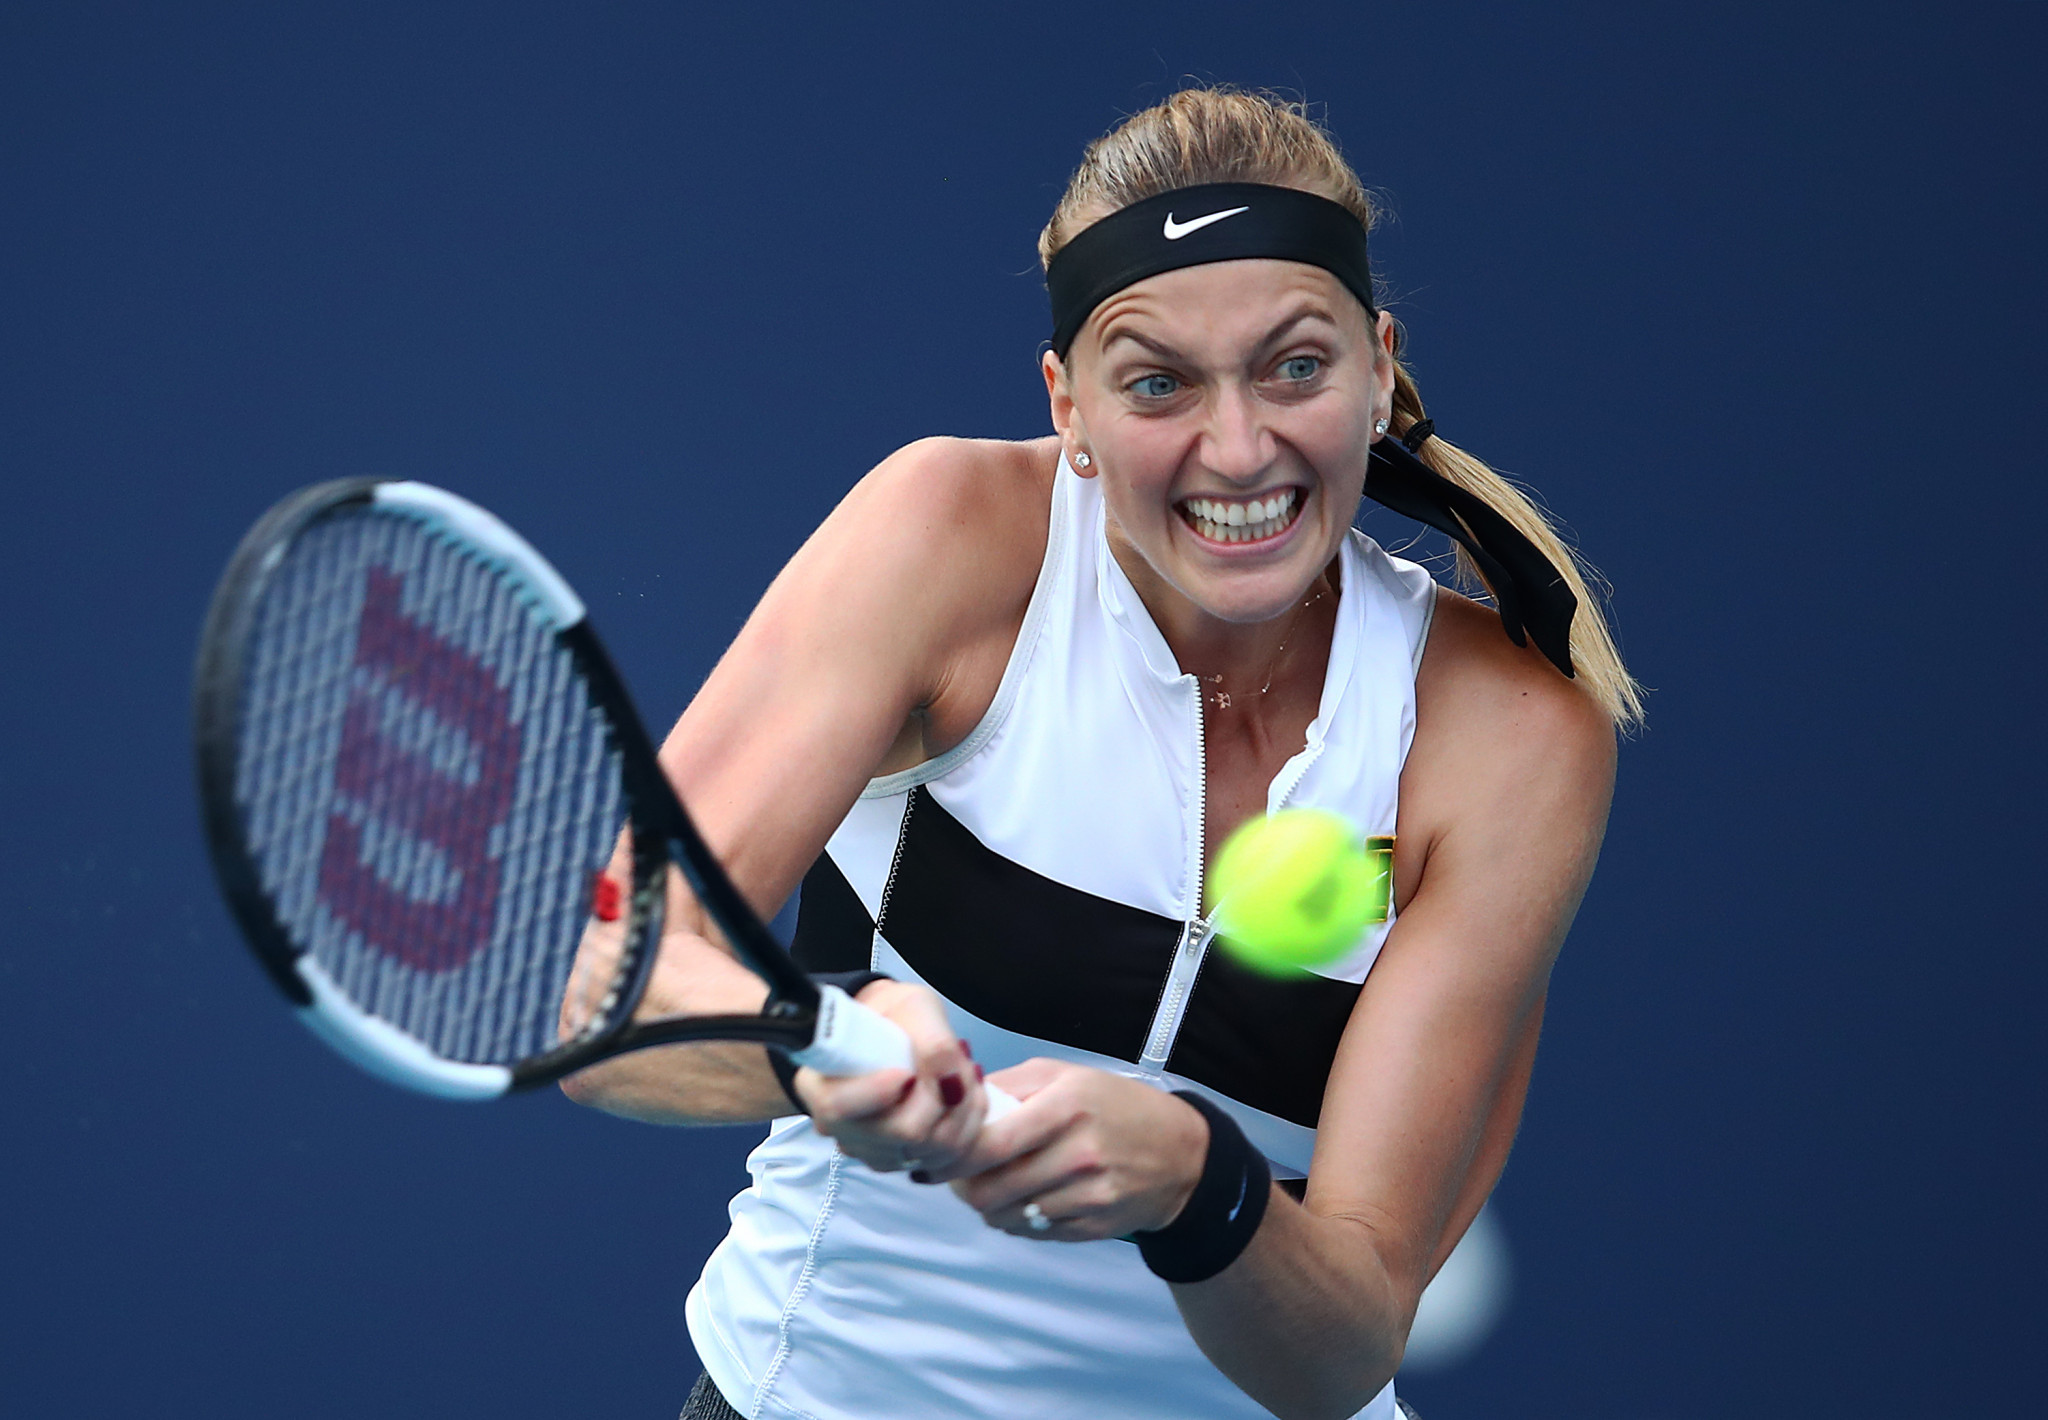 Kvitová eases into third round at Miami Open